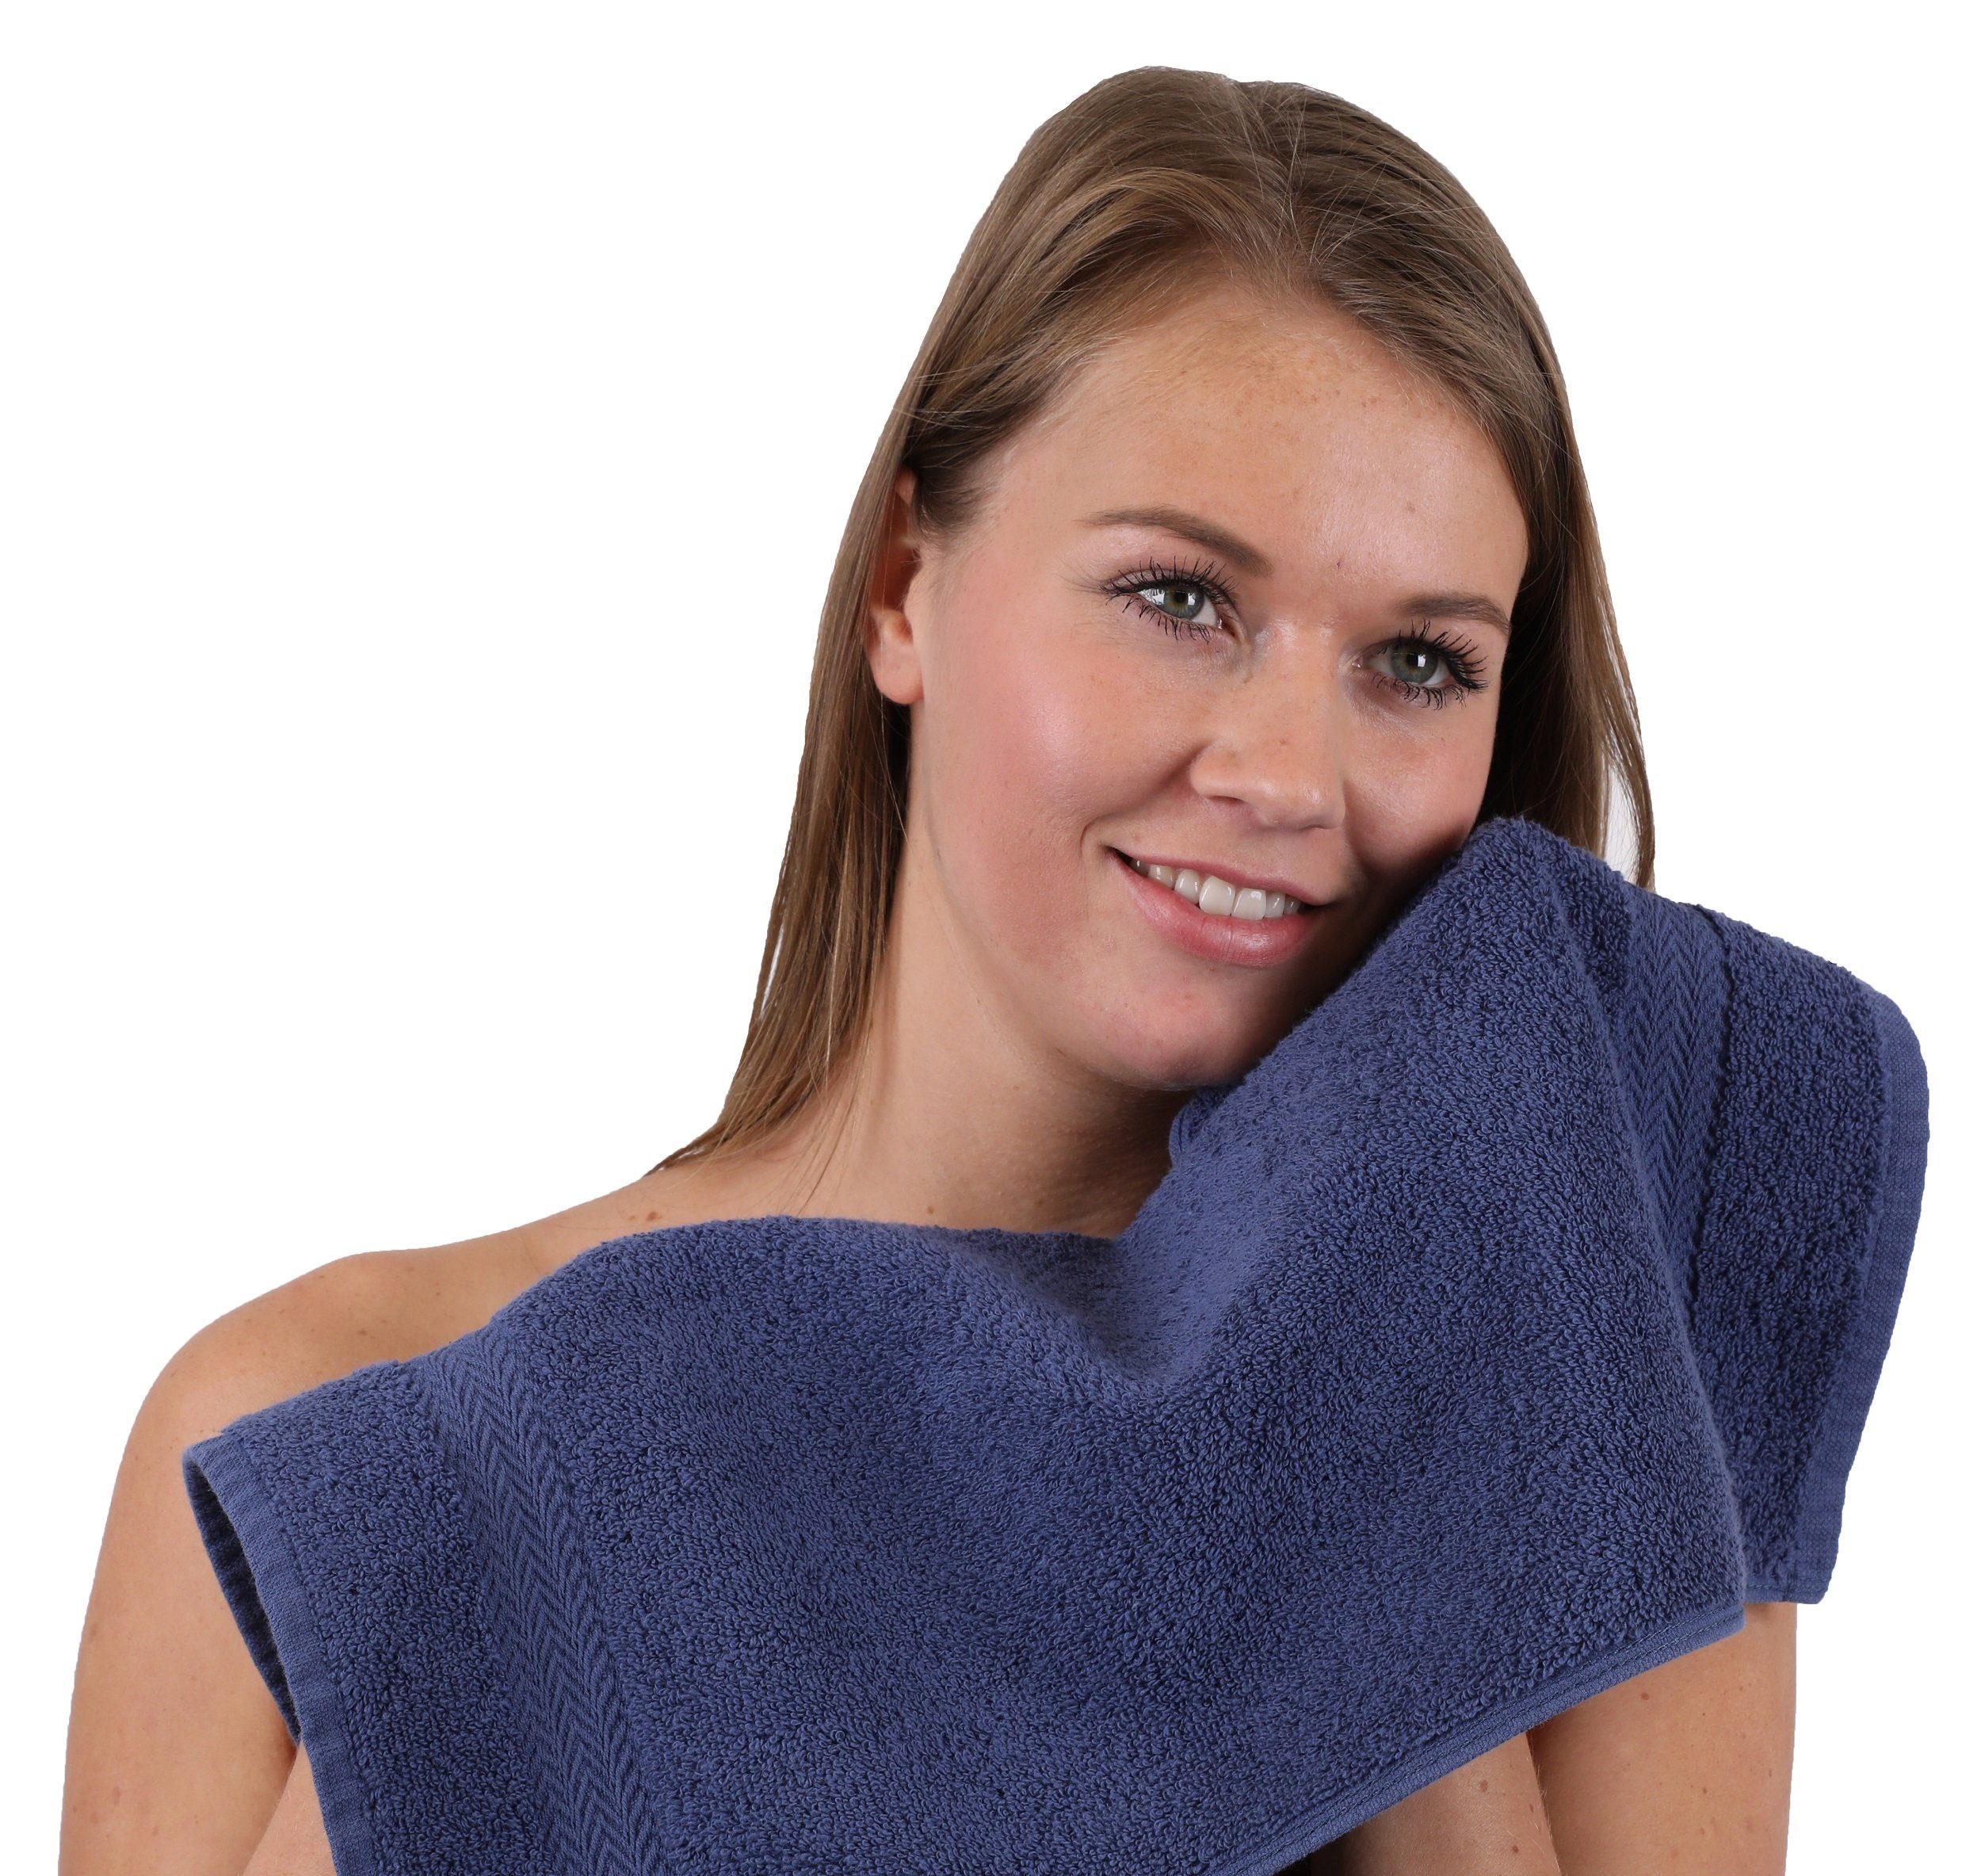 Betz Handtuch Farbe schwarz, Handtuch-Set und 10-TLG. Baumwolle Set 100% dunkelblau